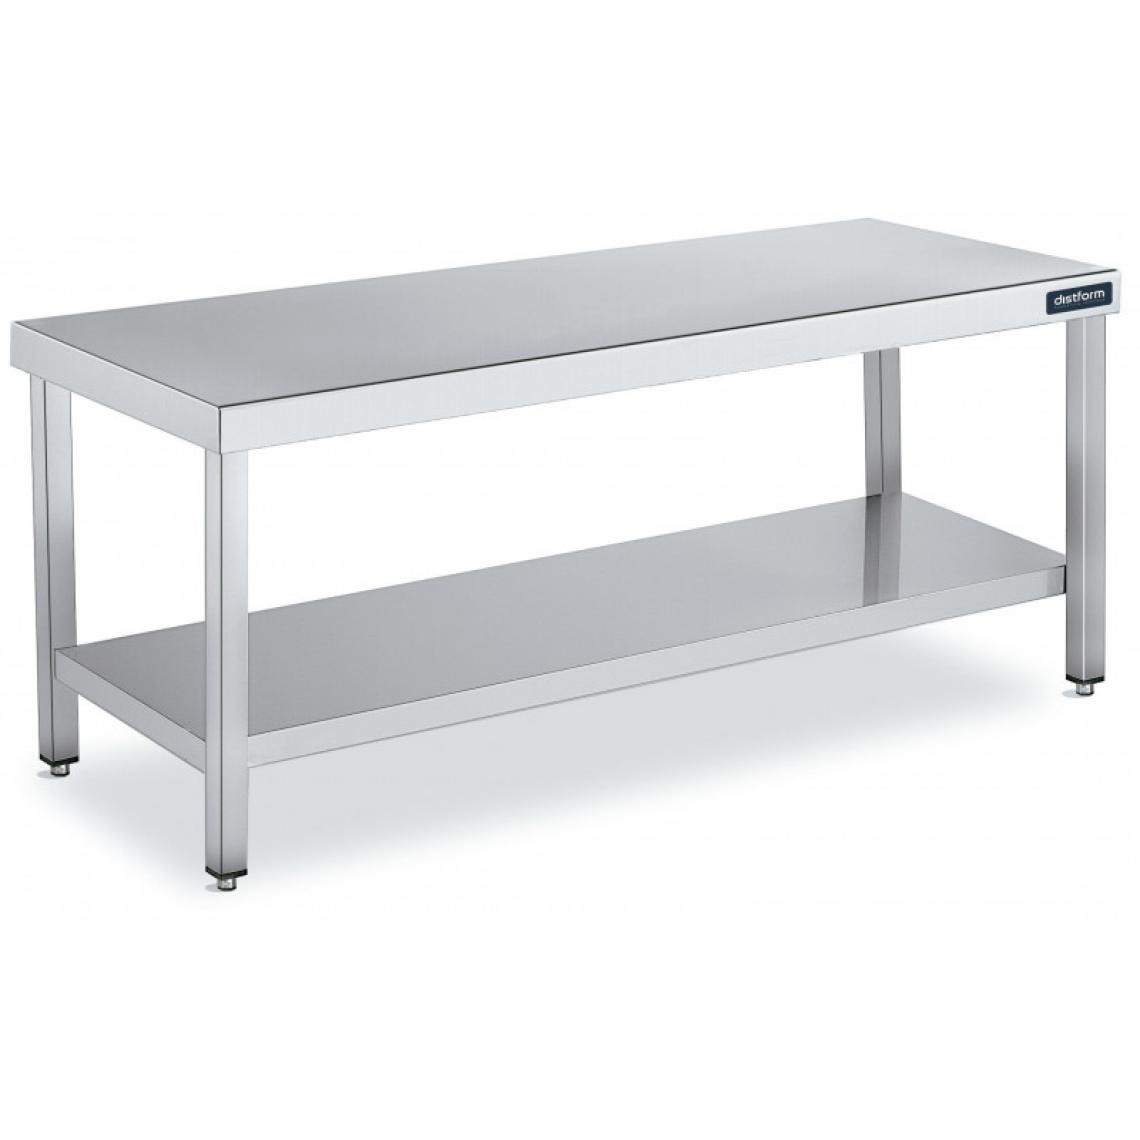 DISTFORM - Table de Travail Centrale Inox avec 1 Étagère - Gamme 600 - Hauteur 600 - Distform - Acier inoxydable1200x600 - Tables à manger